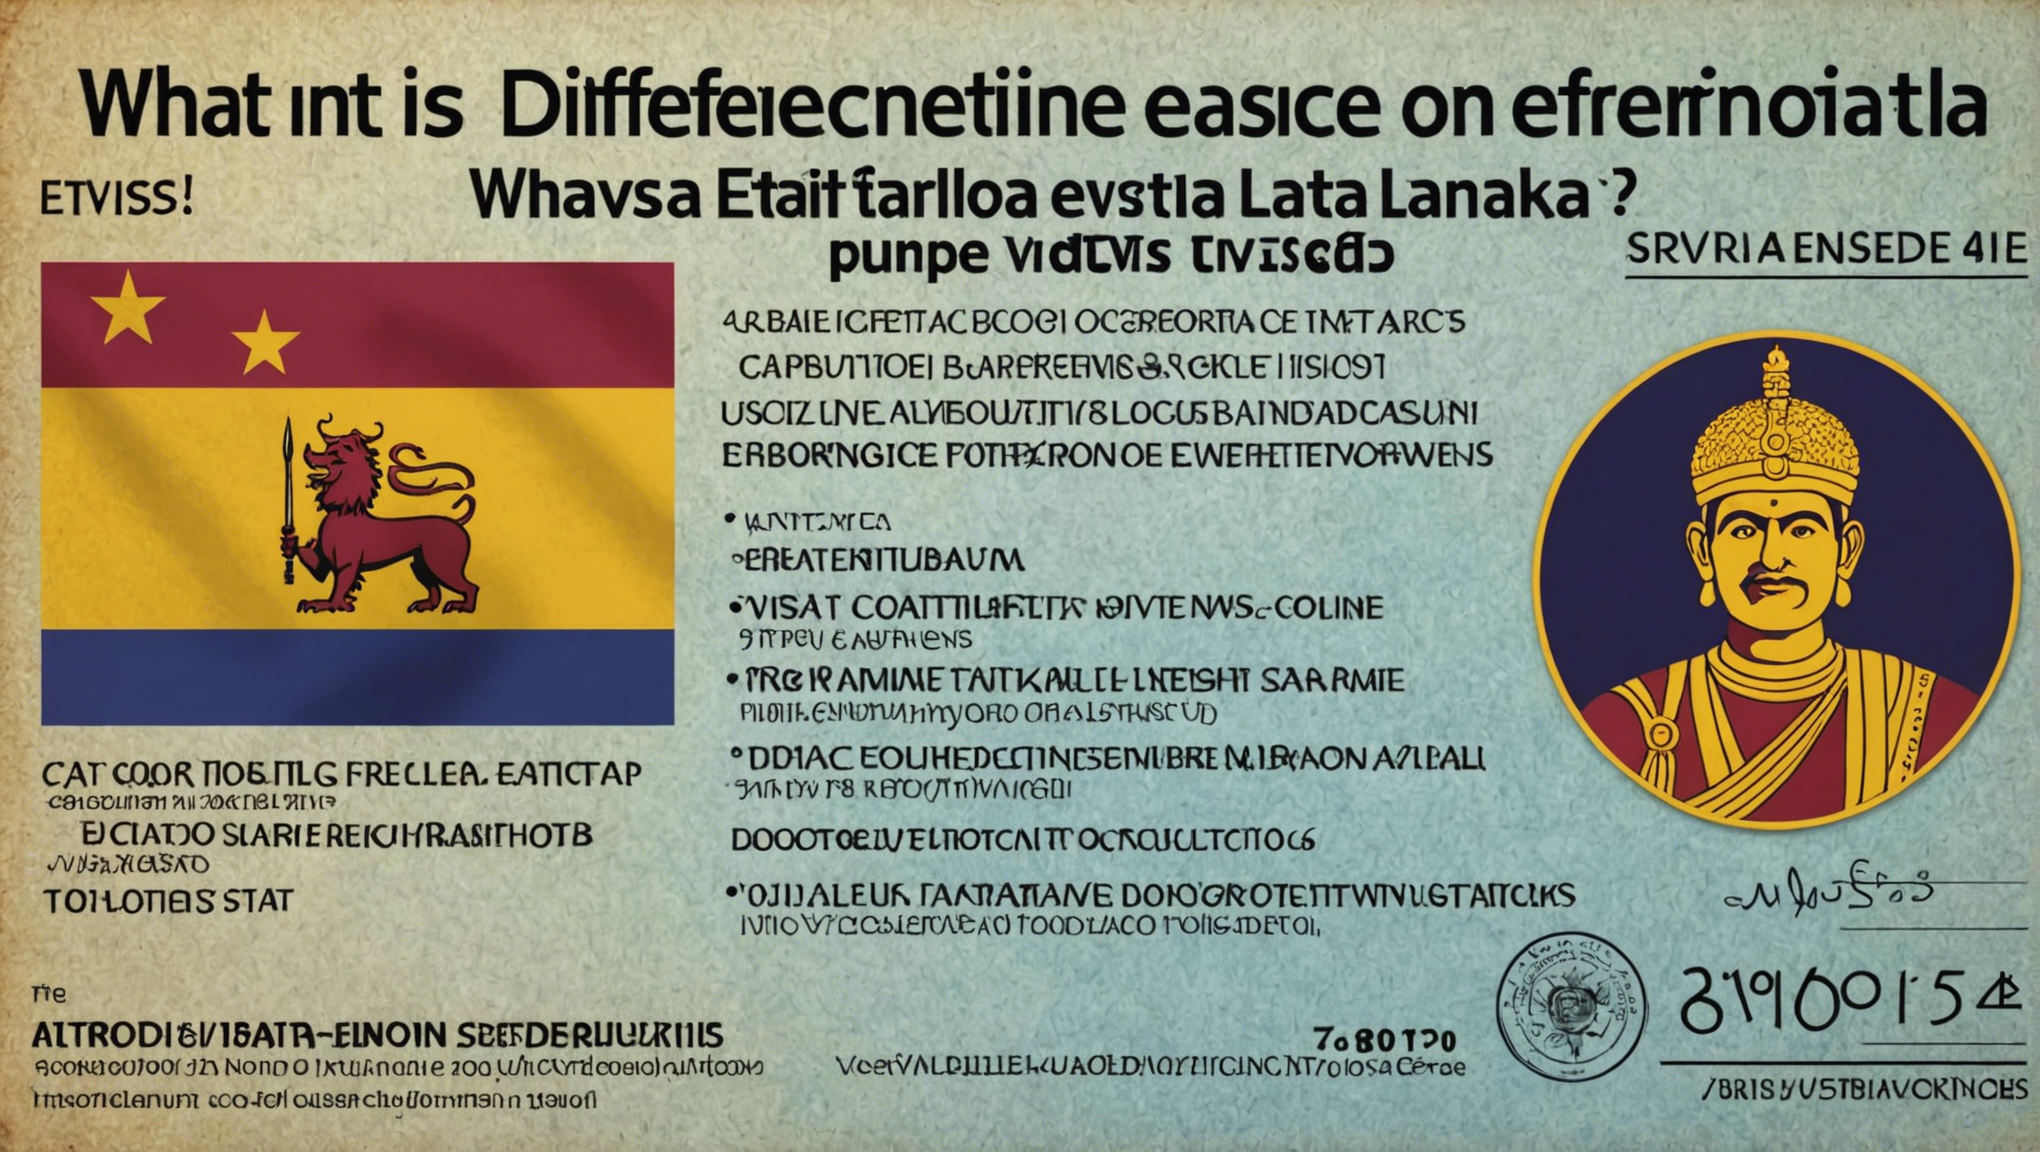 informiere dich über den Unterschied zwischen dem'eta und dem elektronischen Visum für Sri Lanka und wähle die beste Option für deine Reise.